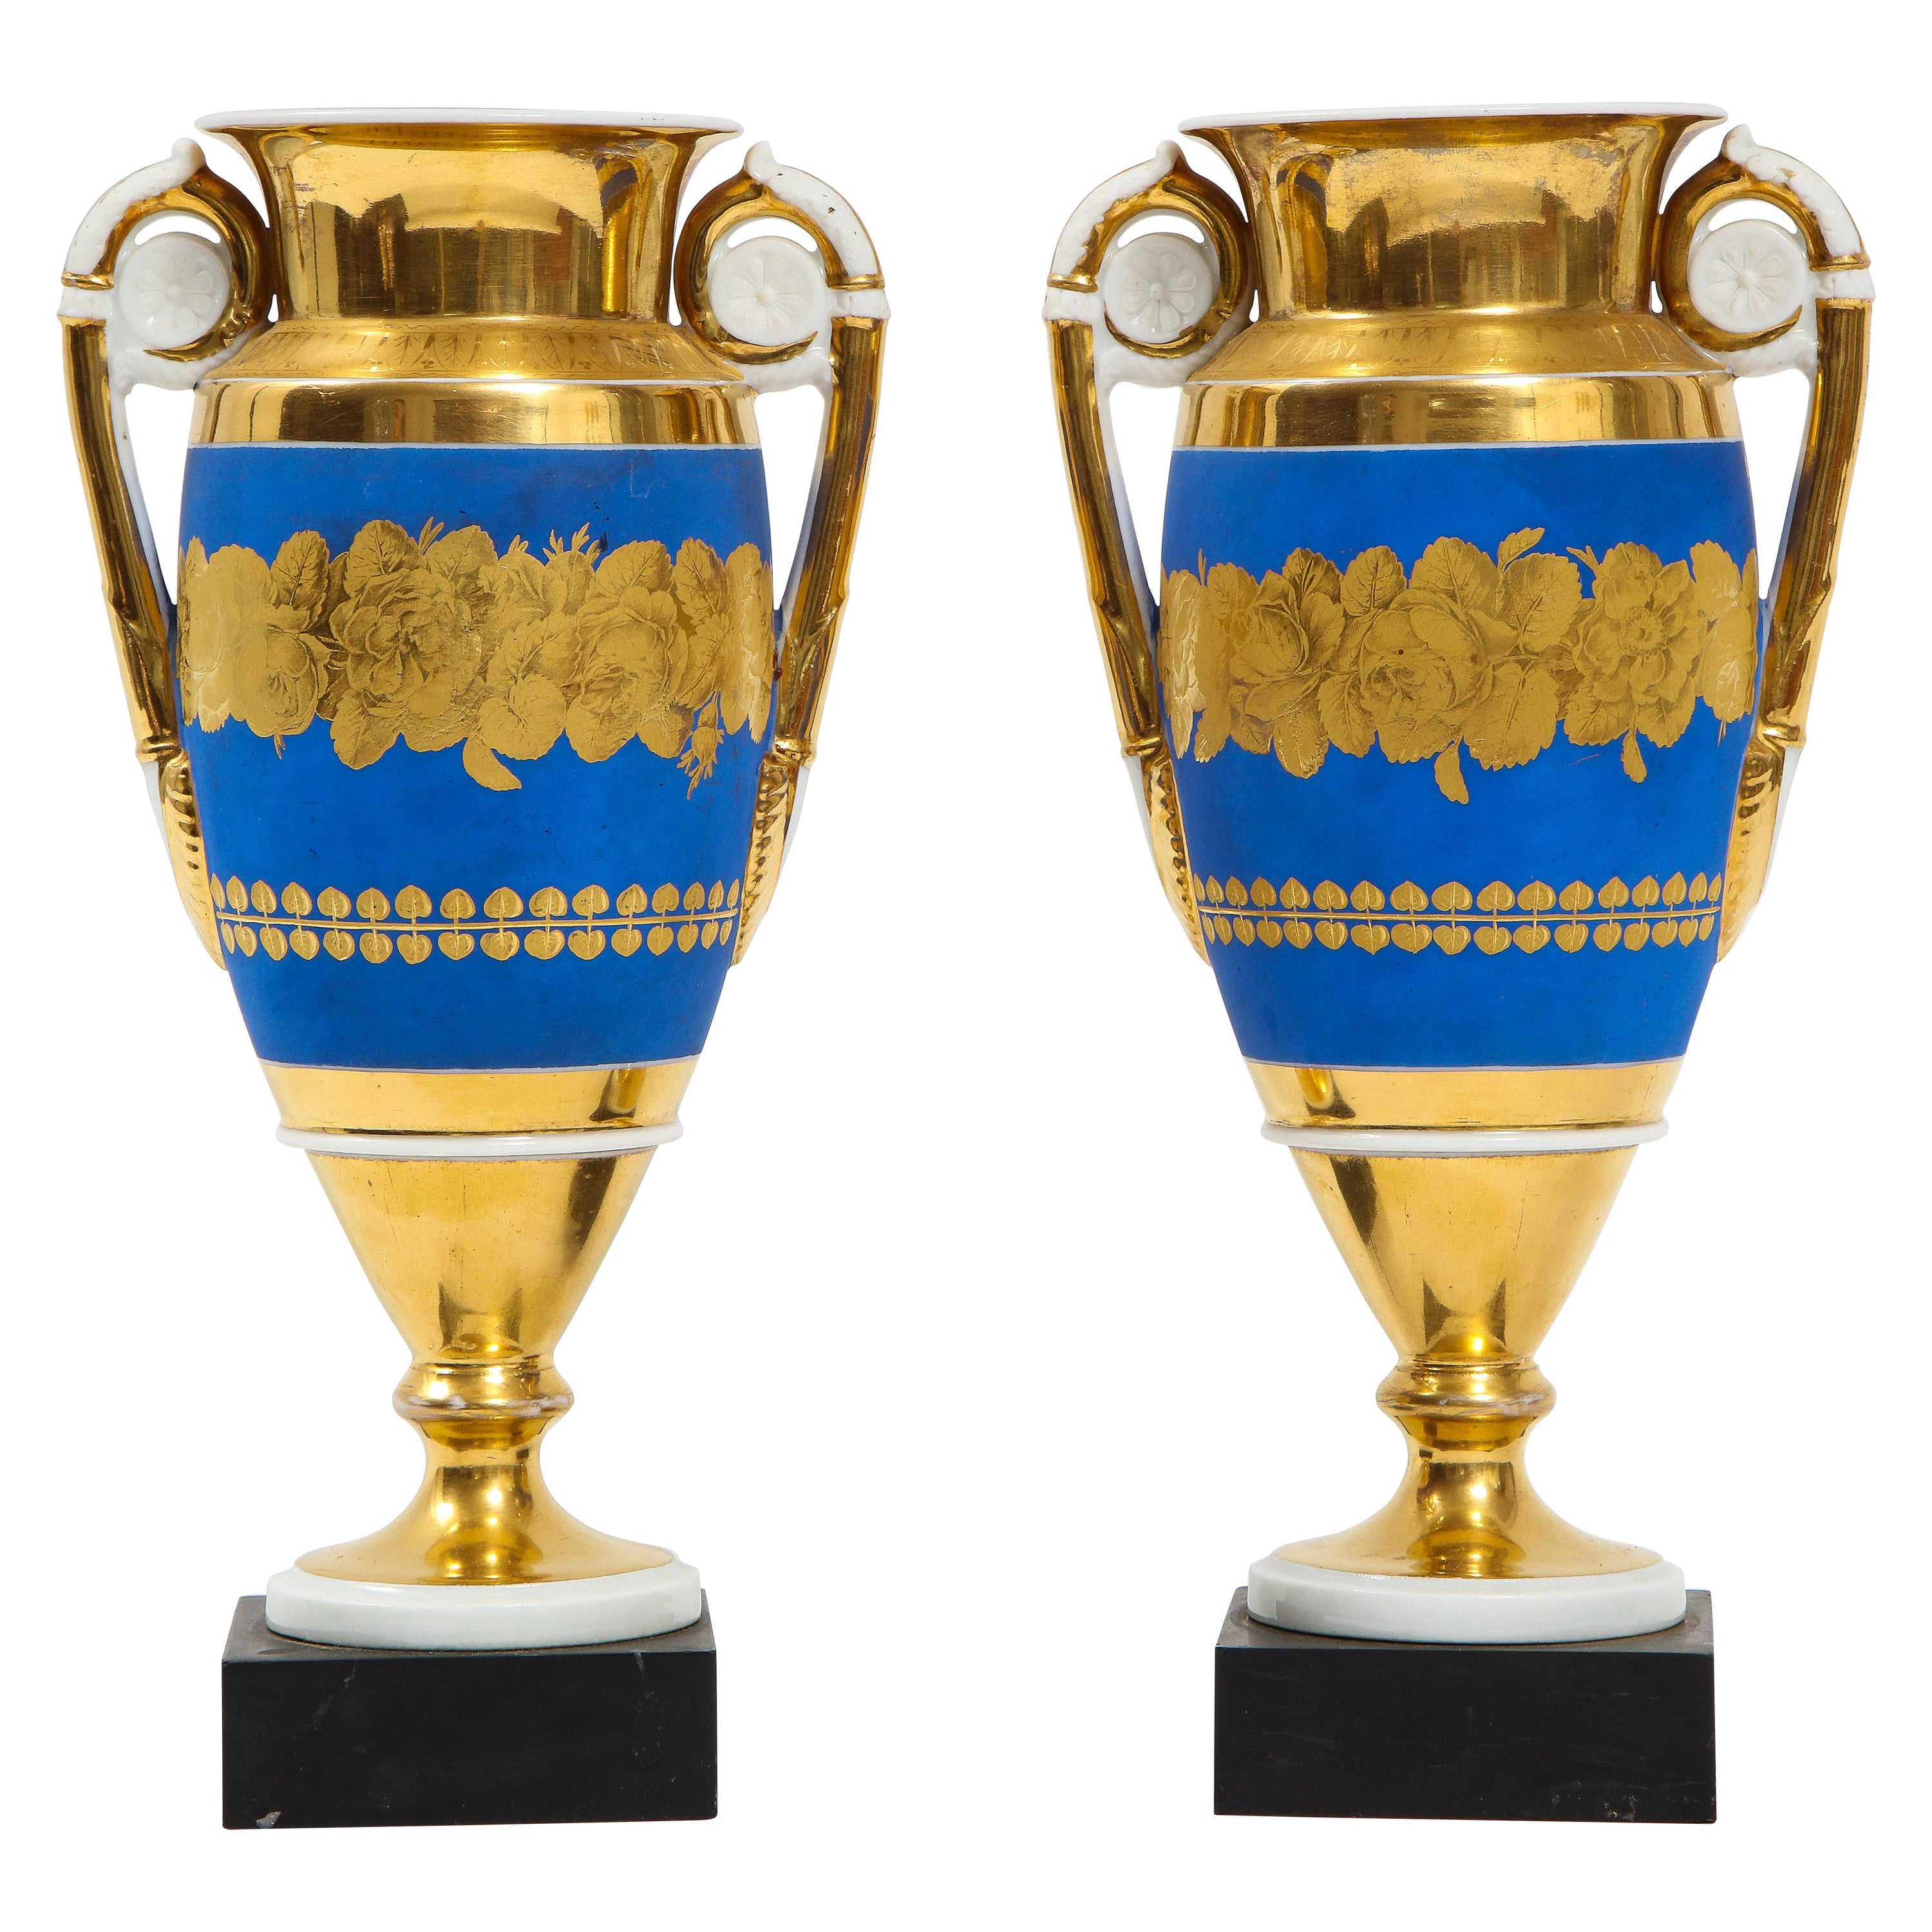 Paar französische Porzellanvasen (19. Jh.) mit blauem und zweifarbigem Goldgrund und goldenen Griffen